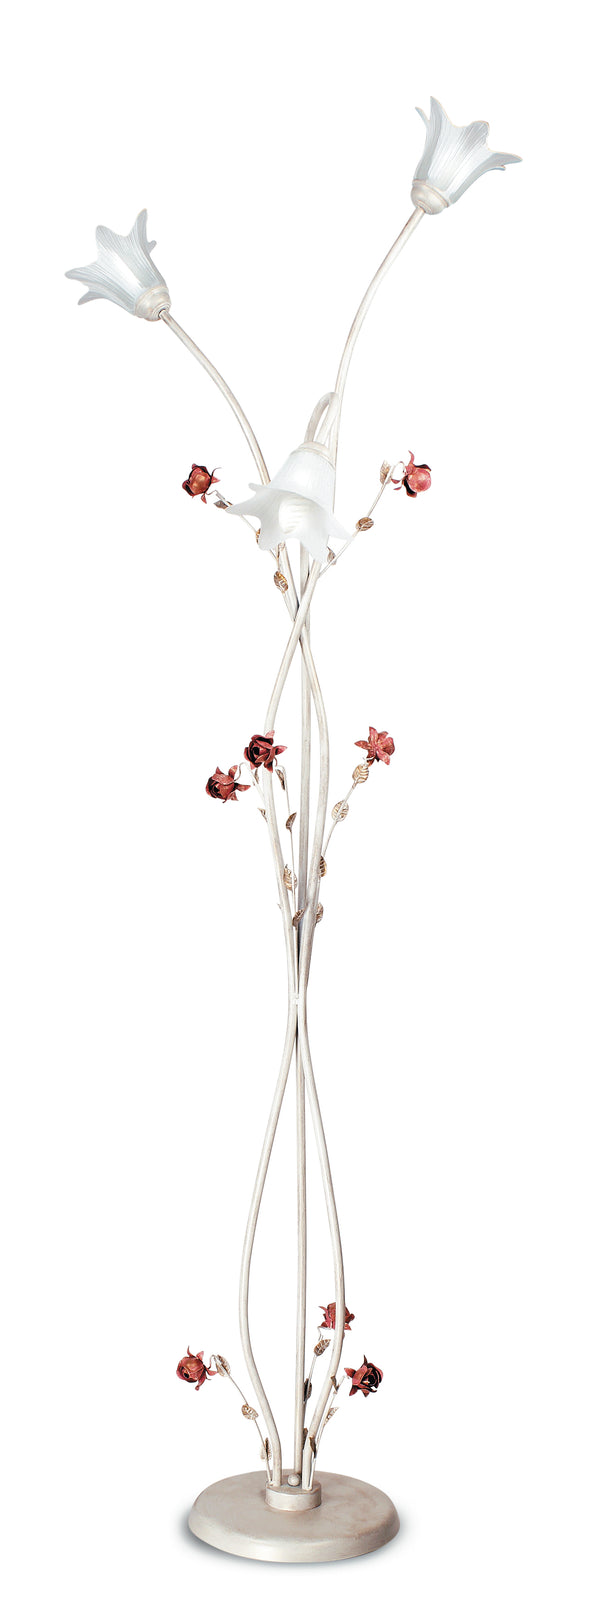 acquista Stehleuchte Elegant Rose Metall Weiß Rot Glasdiffusoren Klassische Stehleuchte E14 AmbienteE / PT3